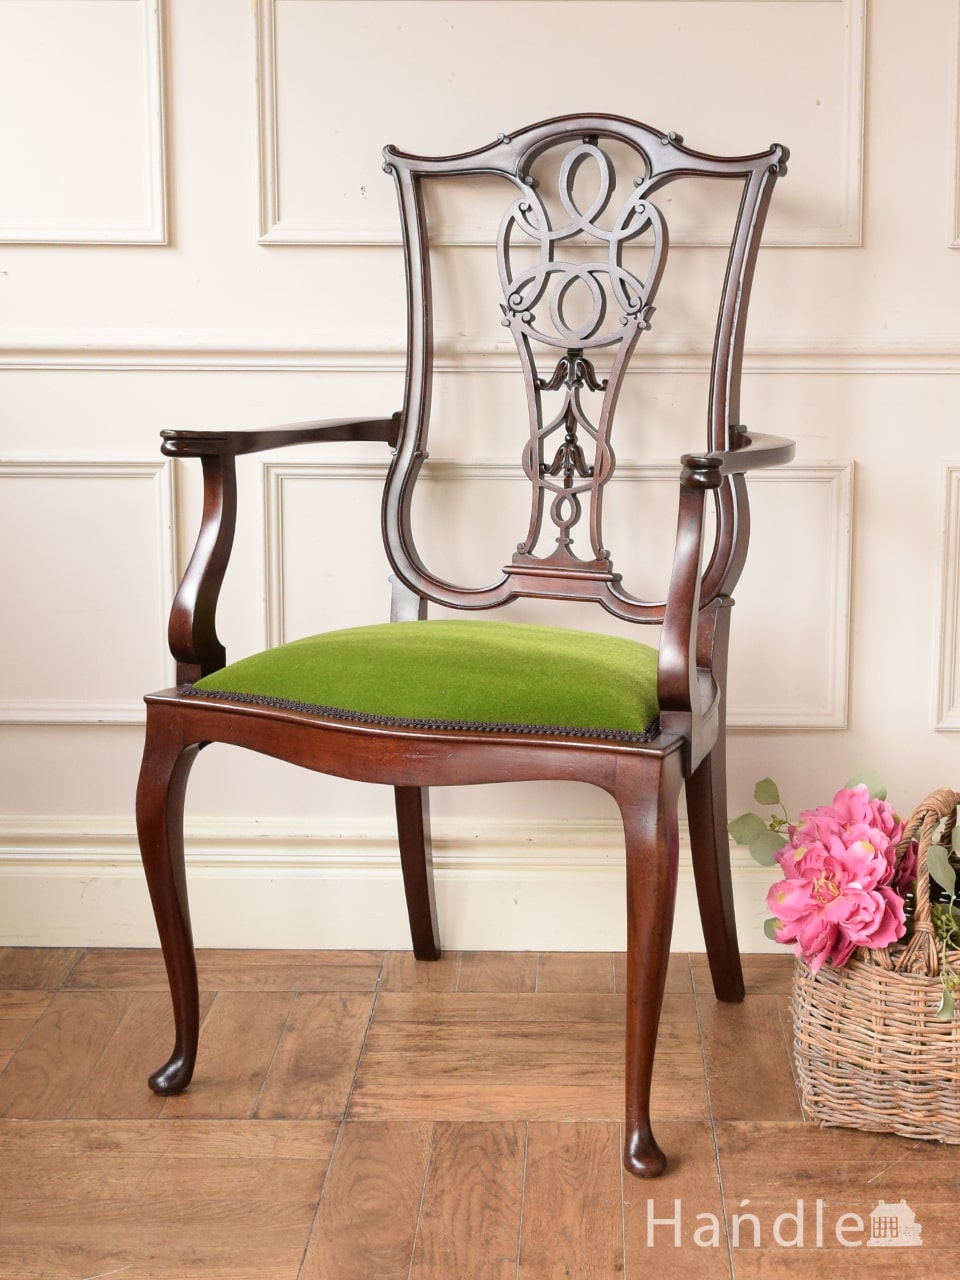 アンティークの美しい椅子、芸術的な透かし彫りのアームチェア (q-431-c)